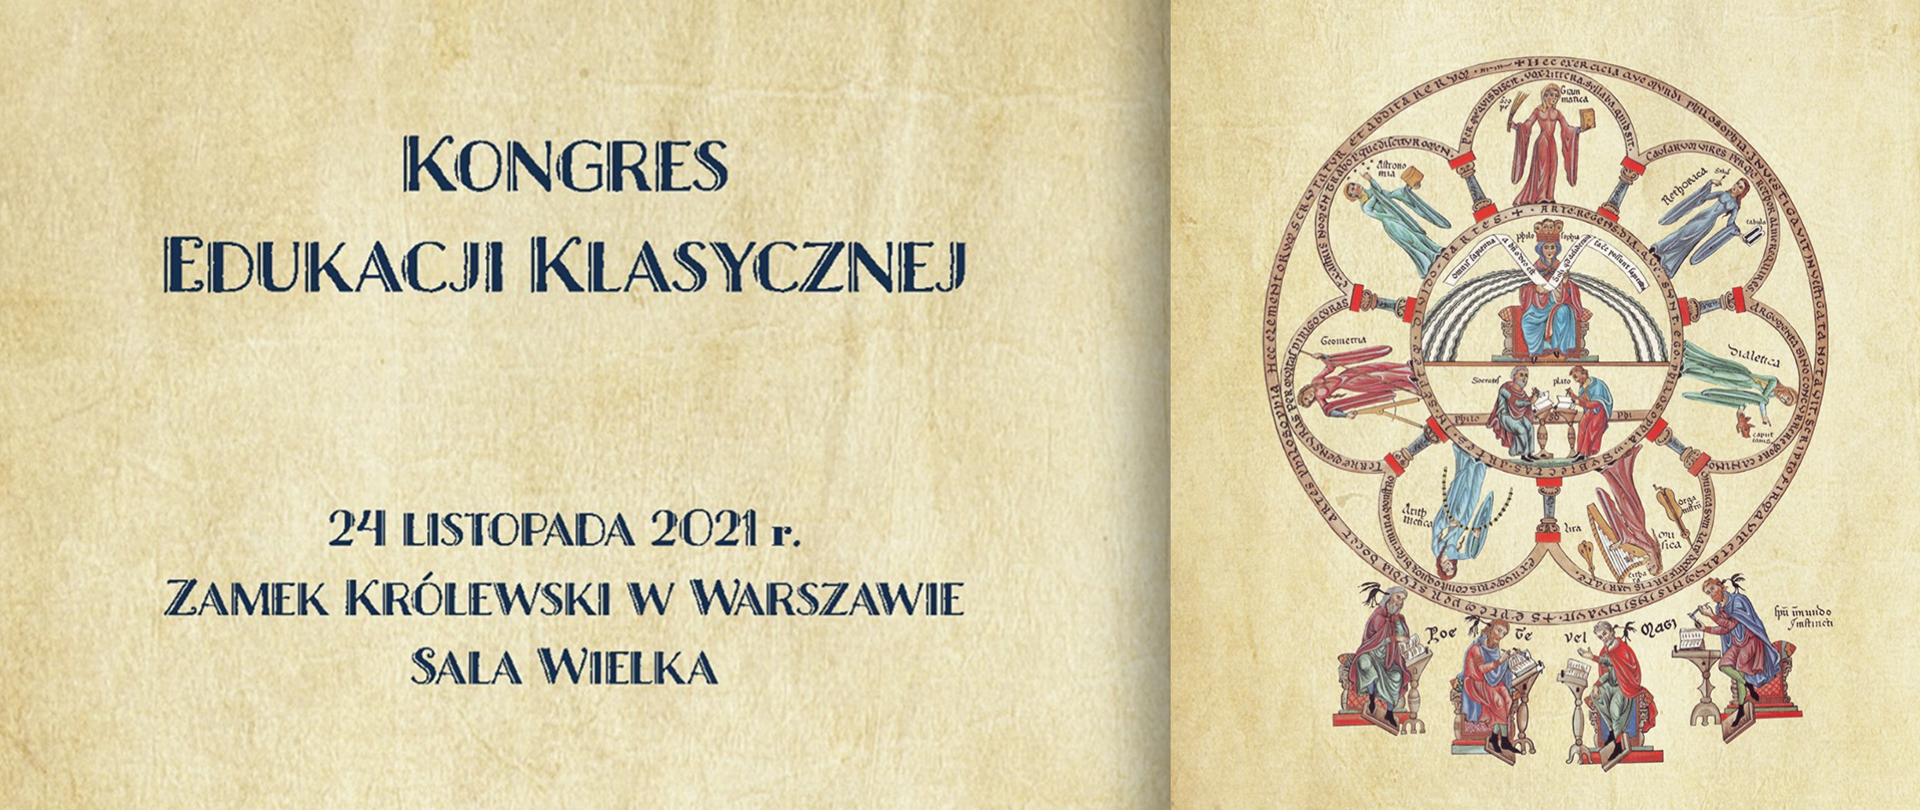 Plansza z napisem Kongres Edukacji Klasycznej i terminem wydarzenia 24 listopada 2021 roku, Zamek Królewski w Warszawie, Sala Wielka 